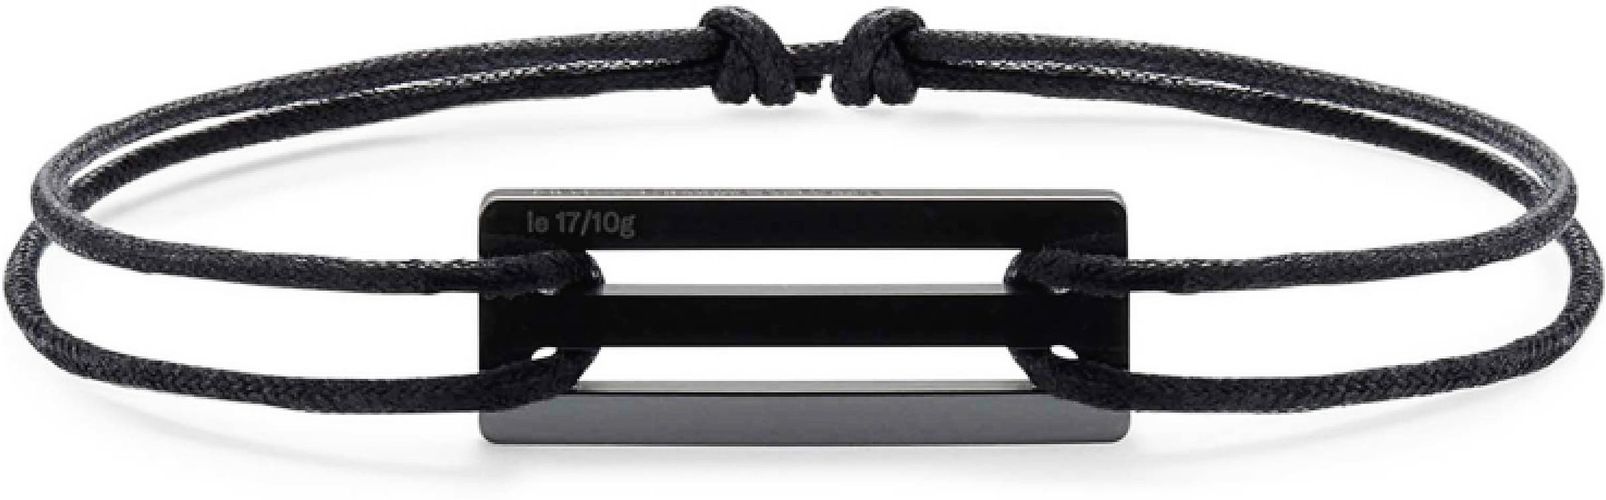 1.7G Ceramic Cord Bracelet